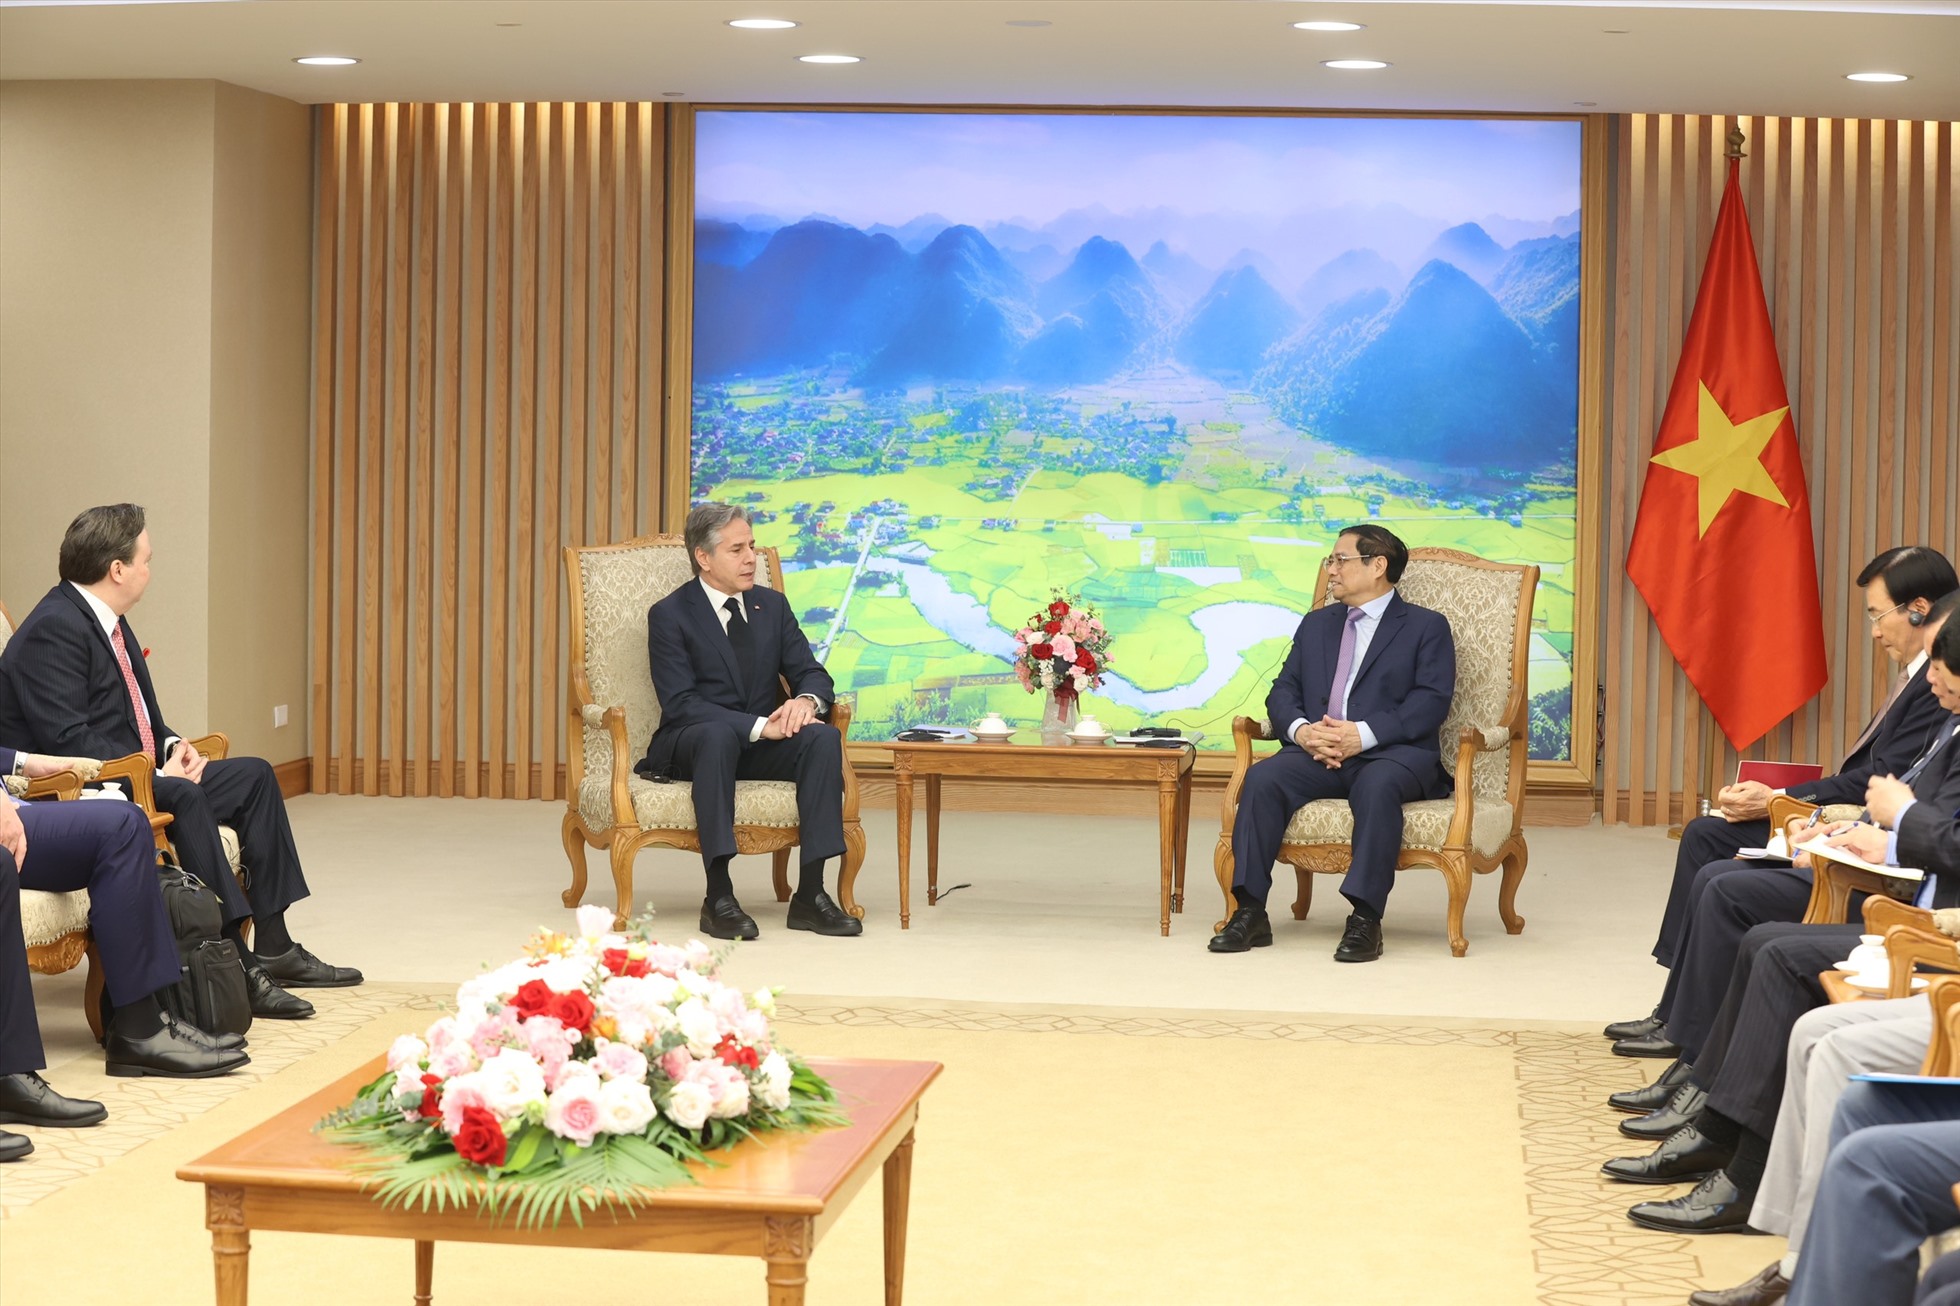 Chuyến thăm kéo dài từ ngày 14-16.4 không phải lần đầu tiên của Ngoại trưởng Antony Blinken tới thăm Việt Nam. Ông đã tới thành phố Hồ Chí Minh năm 2015 và Hà Nội năm 2016 với tư cách là Thứ trưởng thường trực Bộ ngoại giao Mỹ. Ảnh: Hải Nguyễn